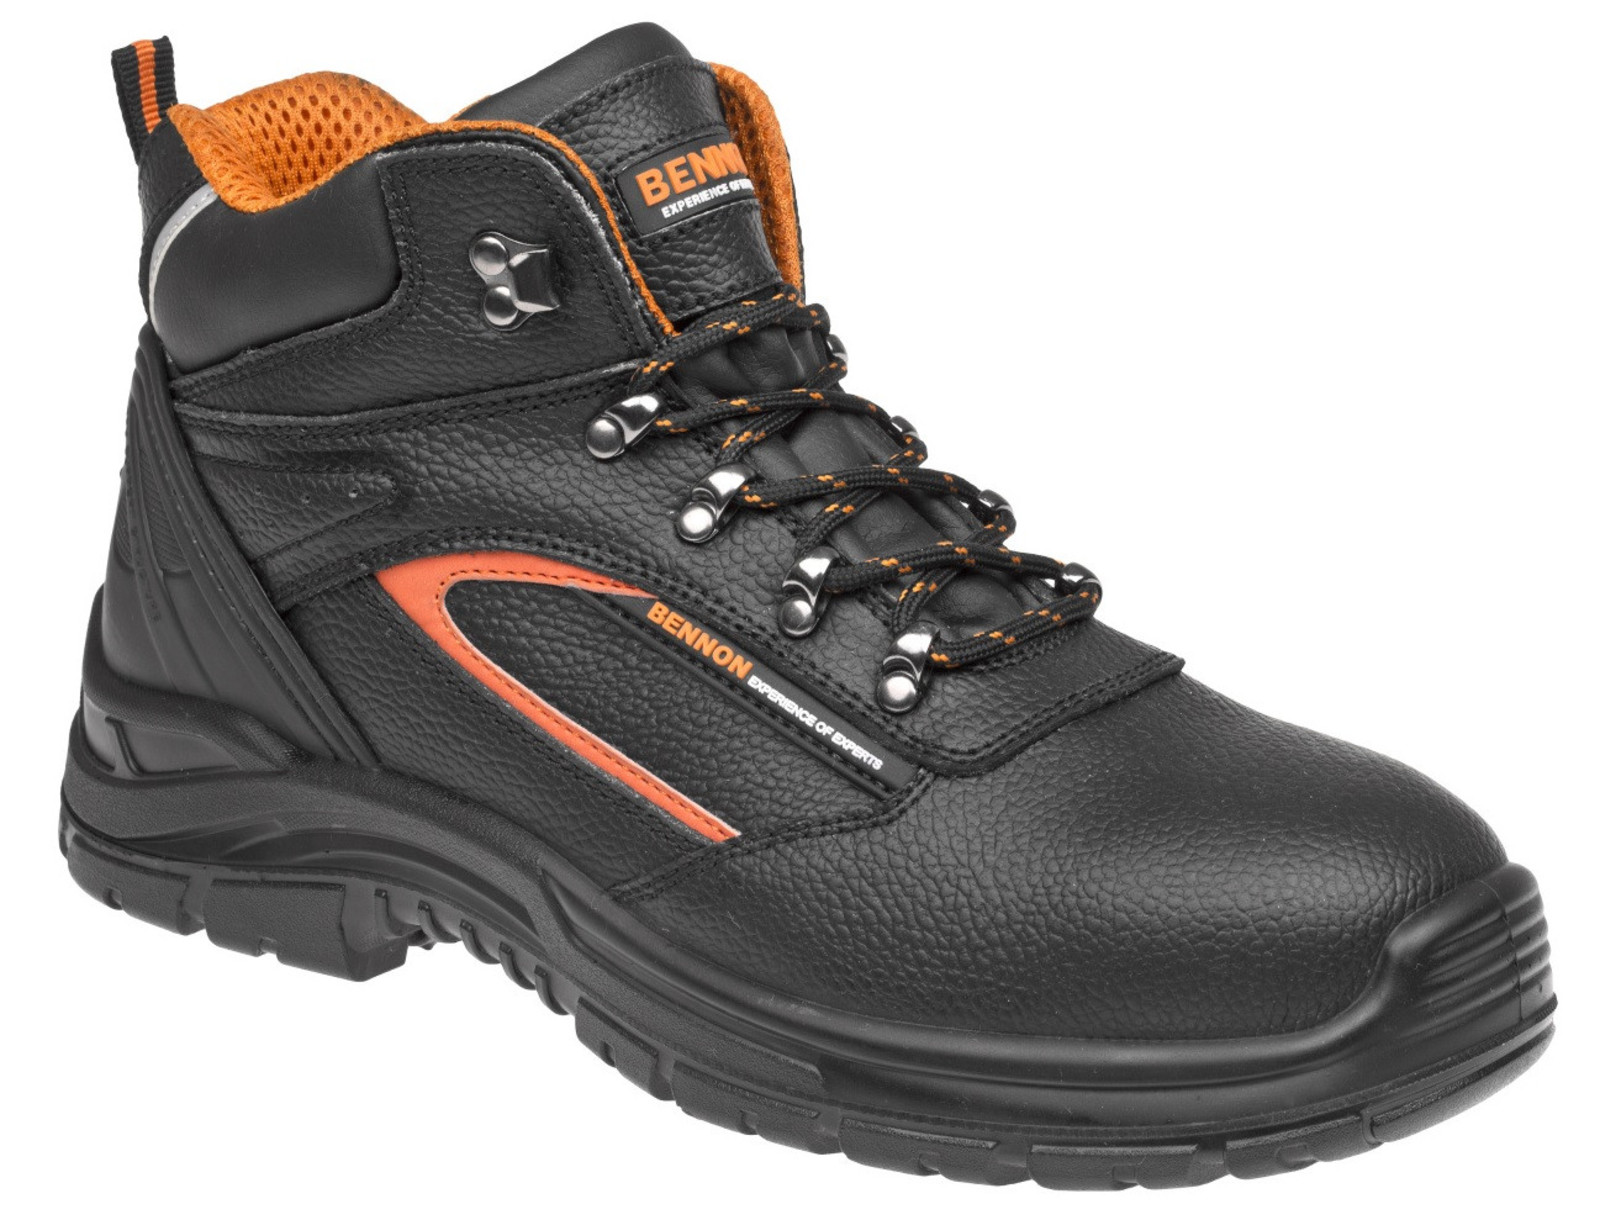 Bezpečnostné topánky Bennon Fortis S3 s membránou - veľkosť: 42, farba: čierna